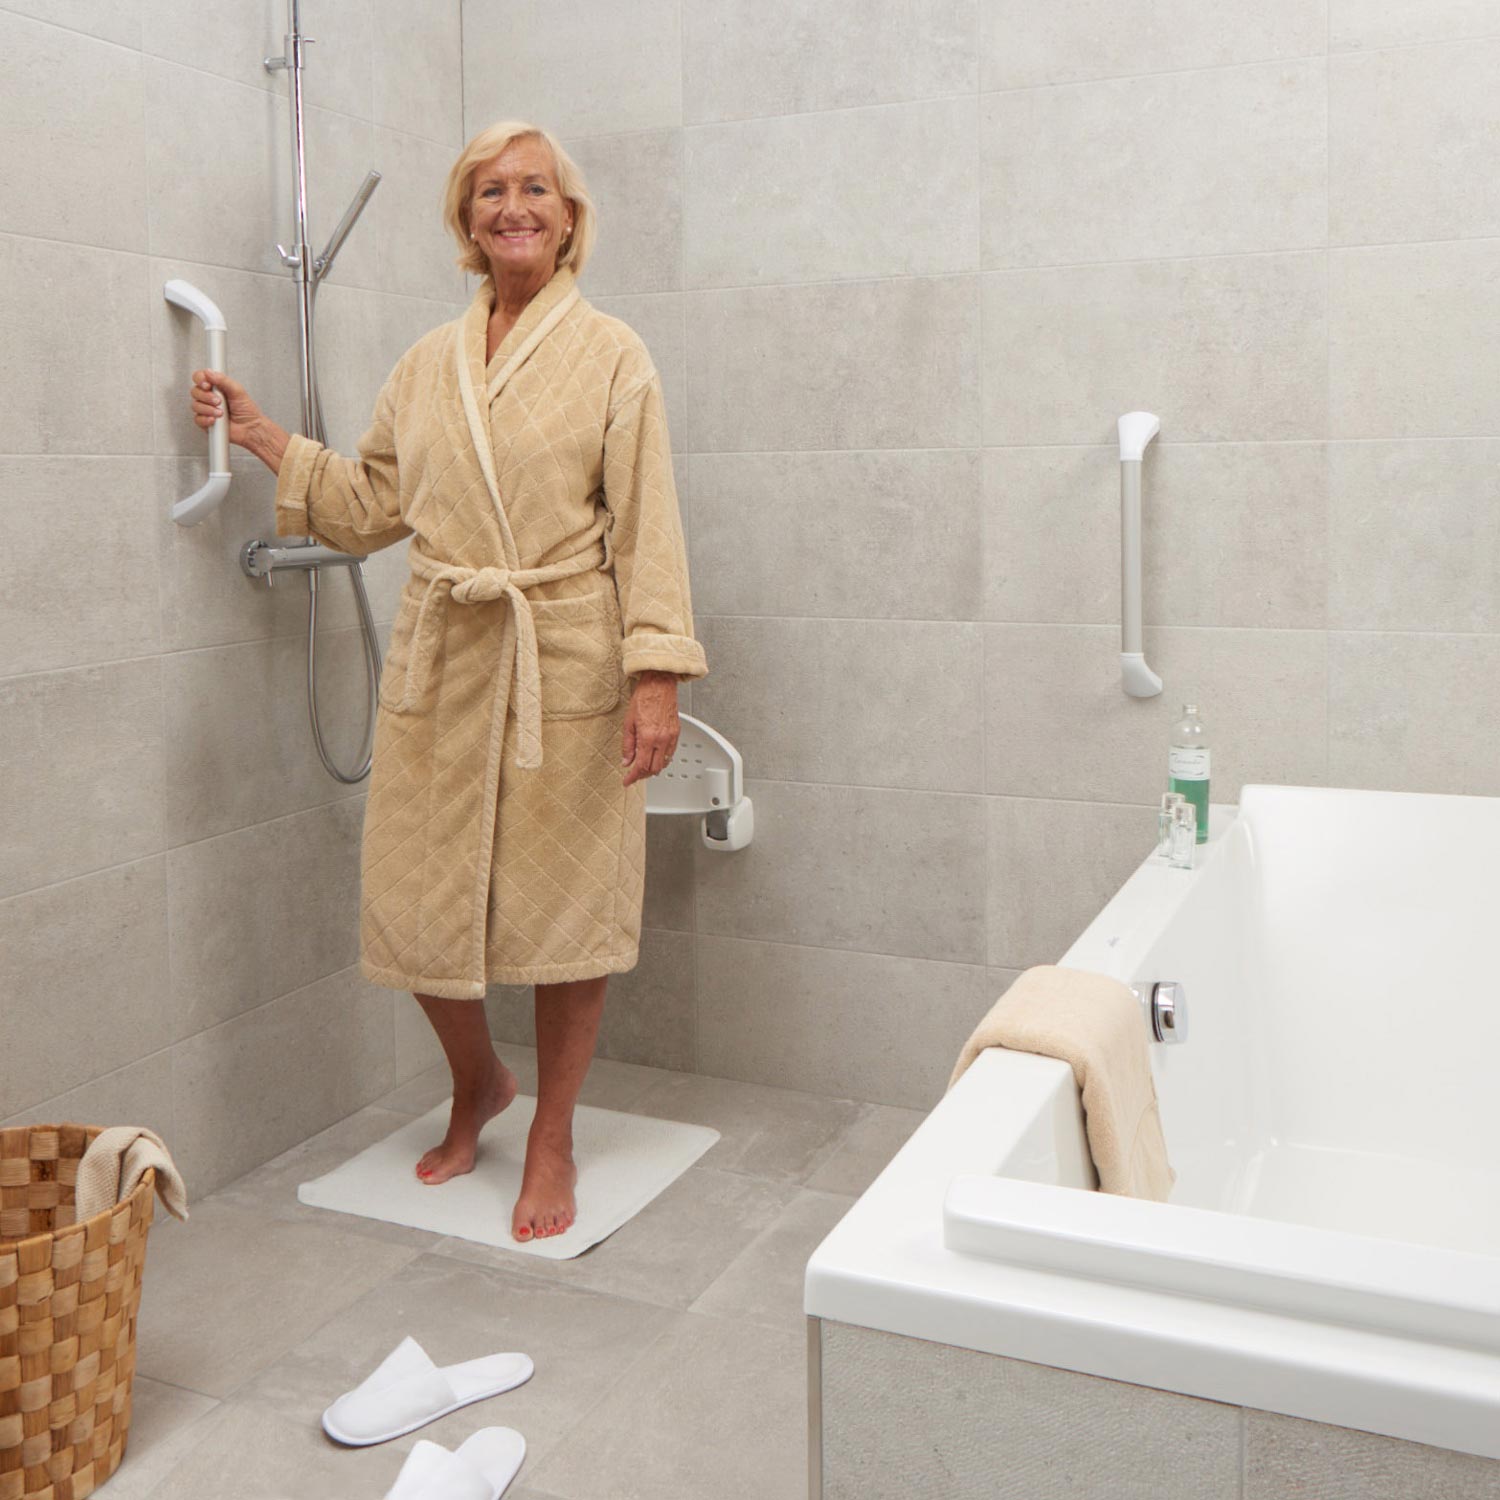 Badkamer aanpassingen om langer thuis te wonen